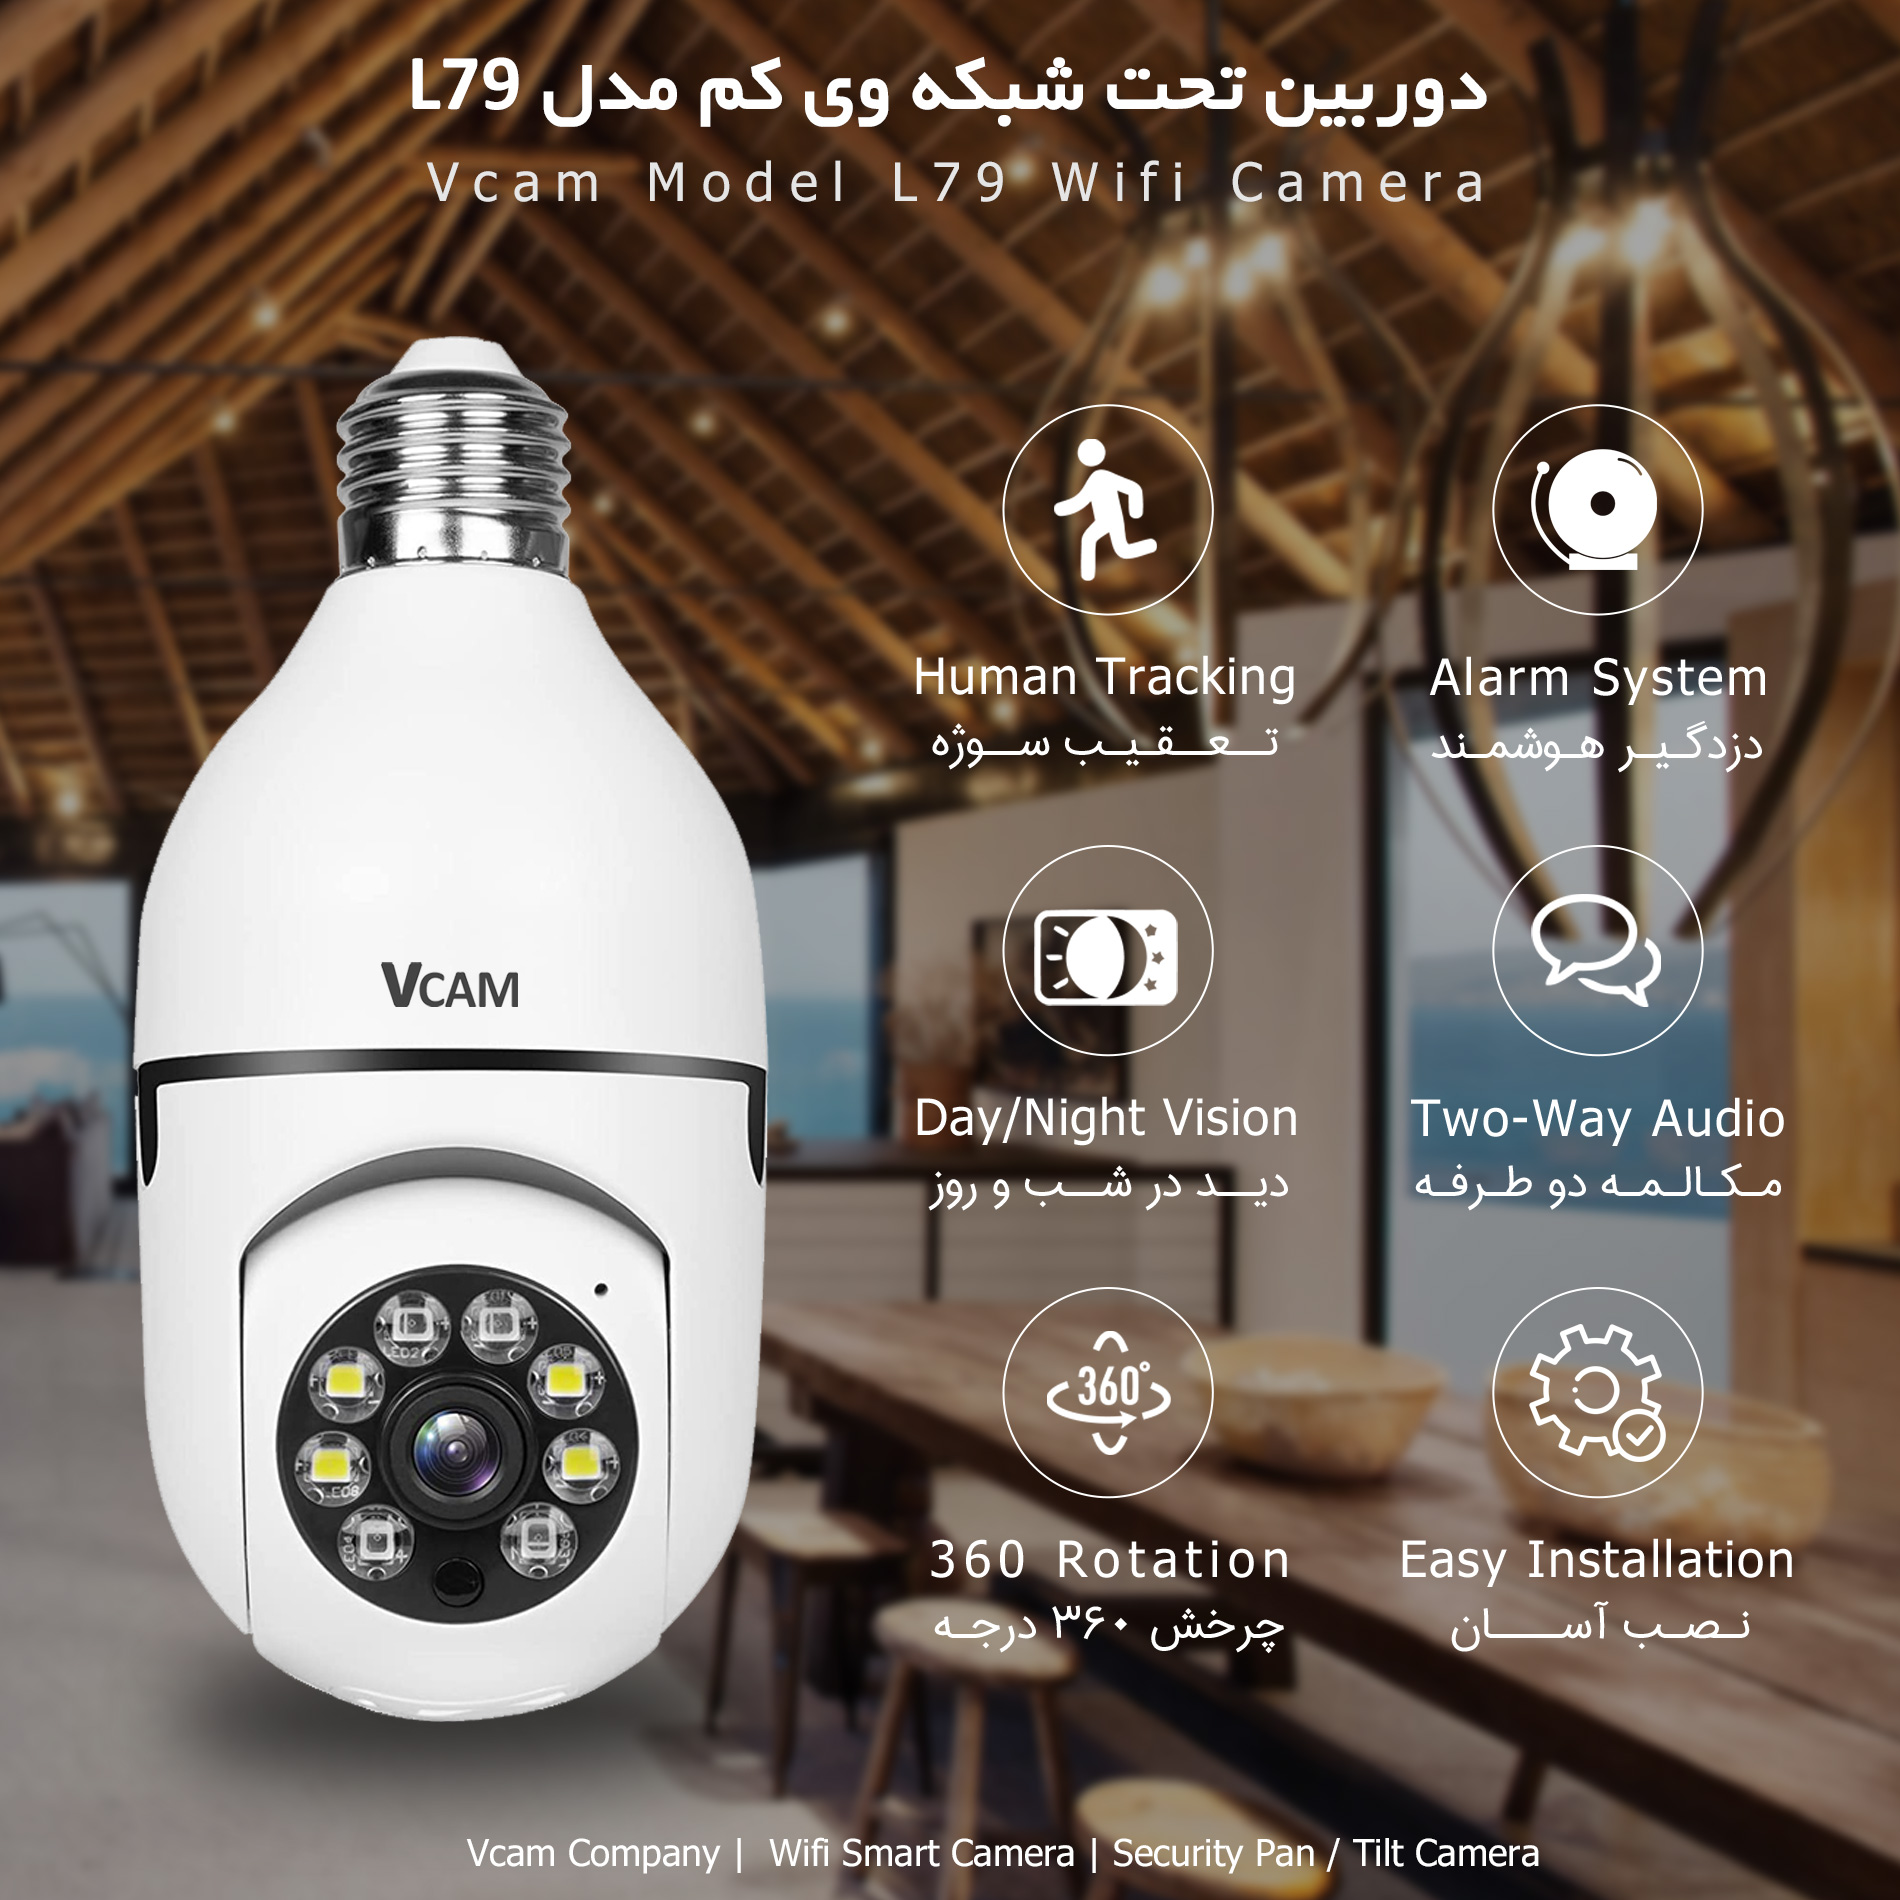 دوربین چرخشی لامپی وی کم Vcam L79 در نوشهر